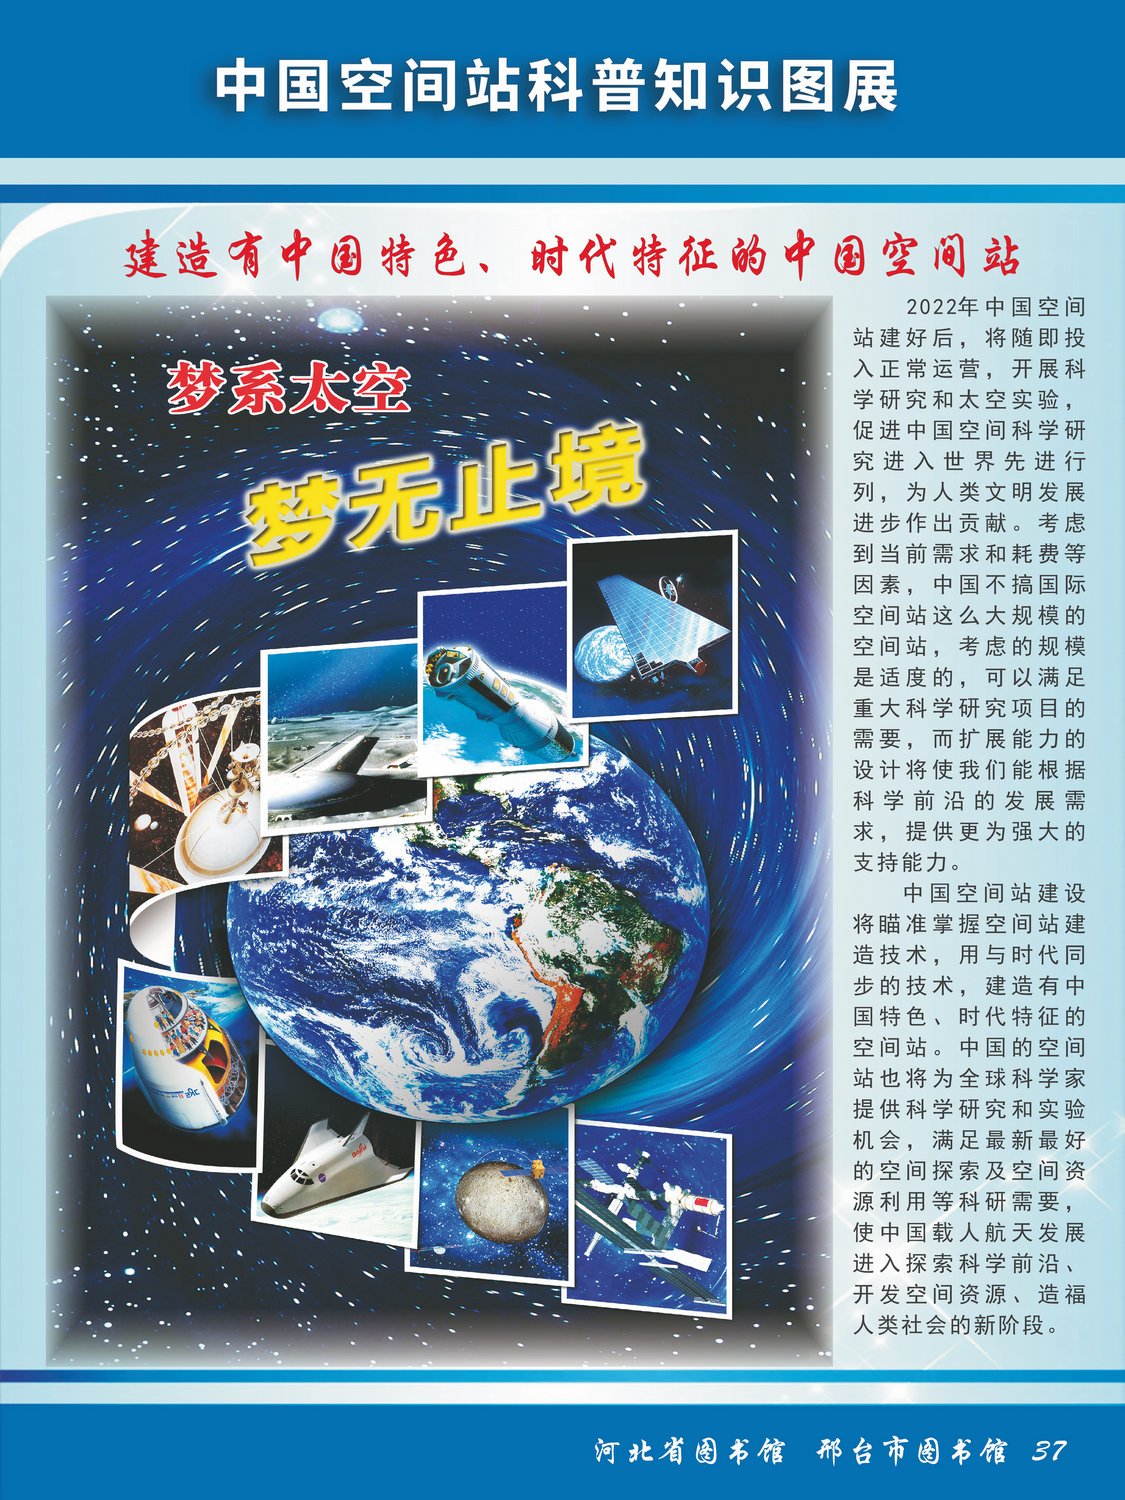 中国空间站科普知识图文展_图37